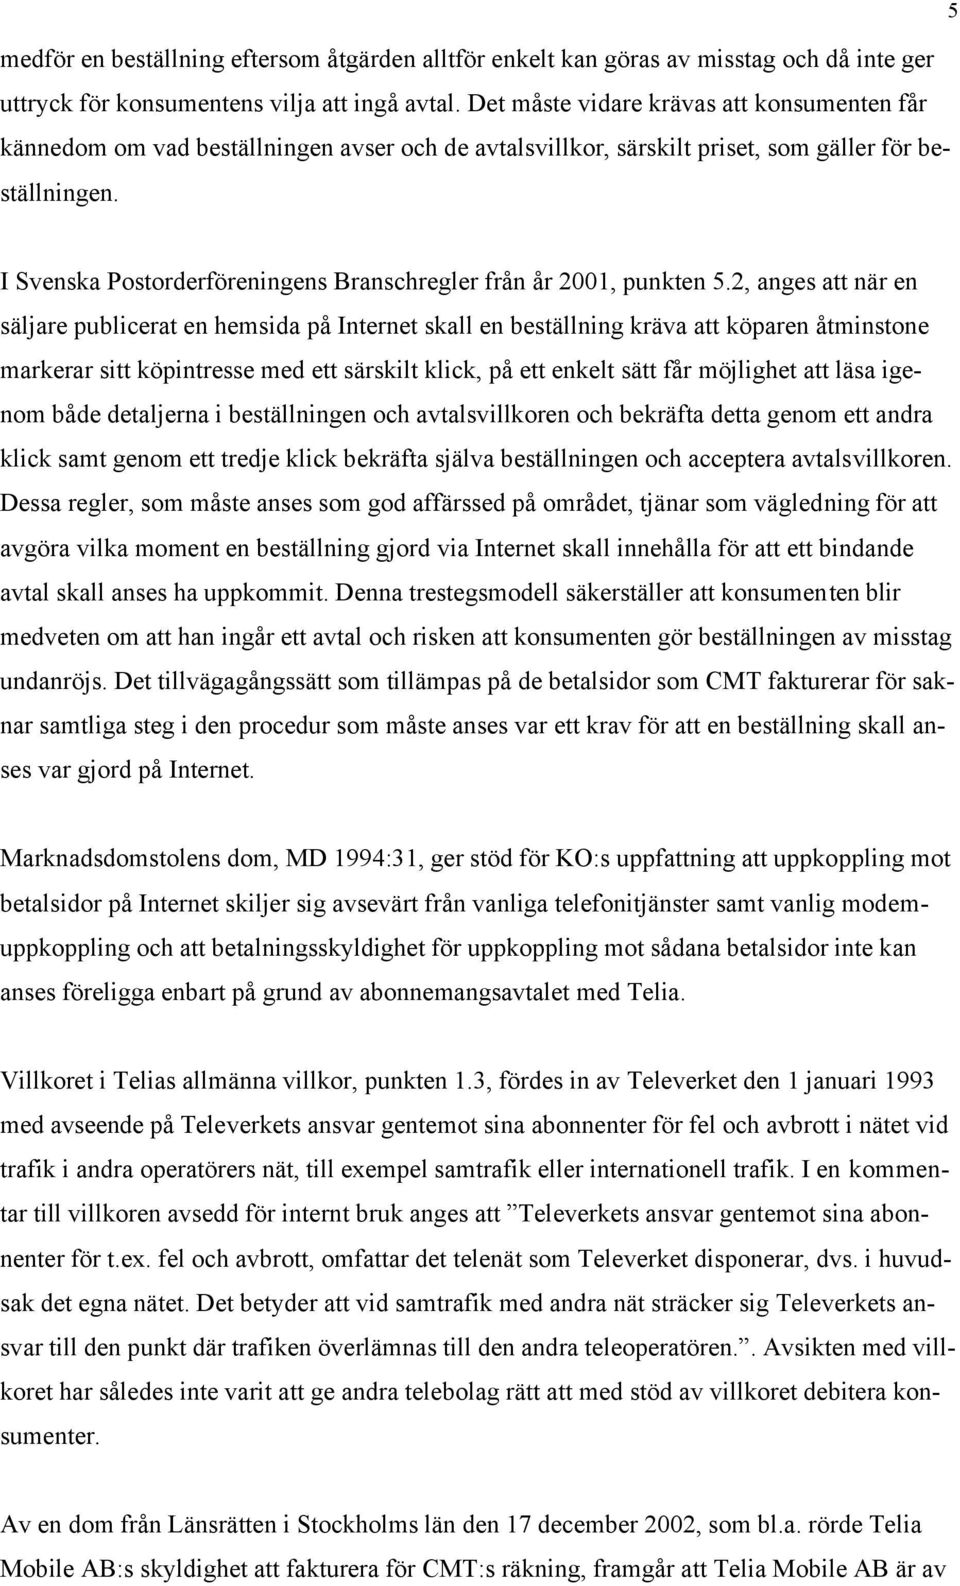 I Svenska Postorderföreningens Branschregler från år 2001, punkten 5.